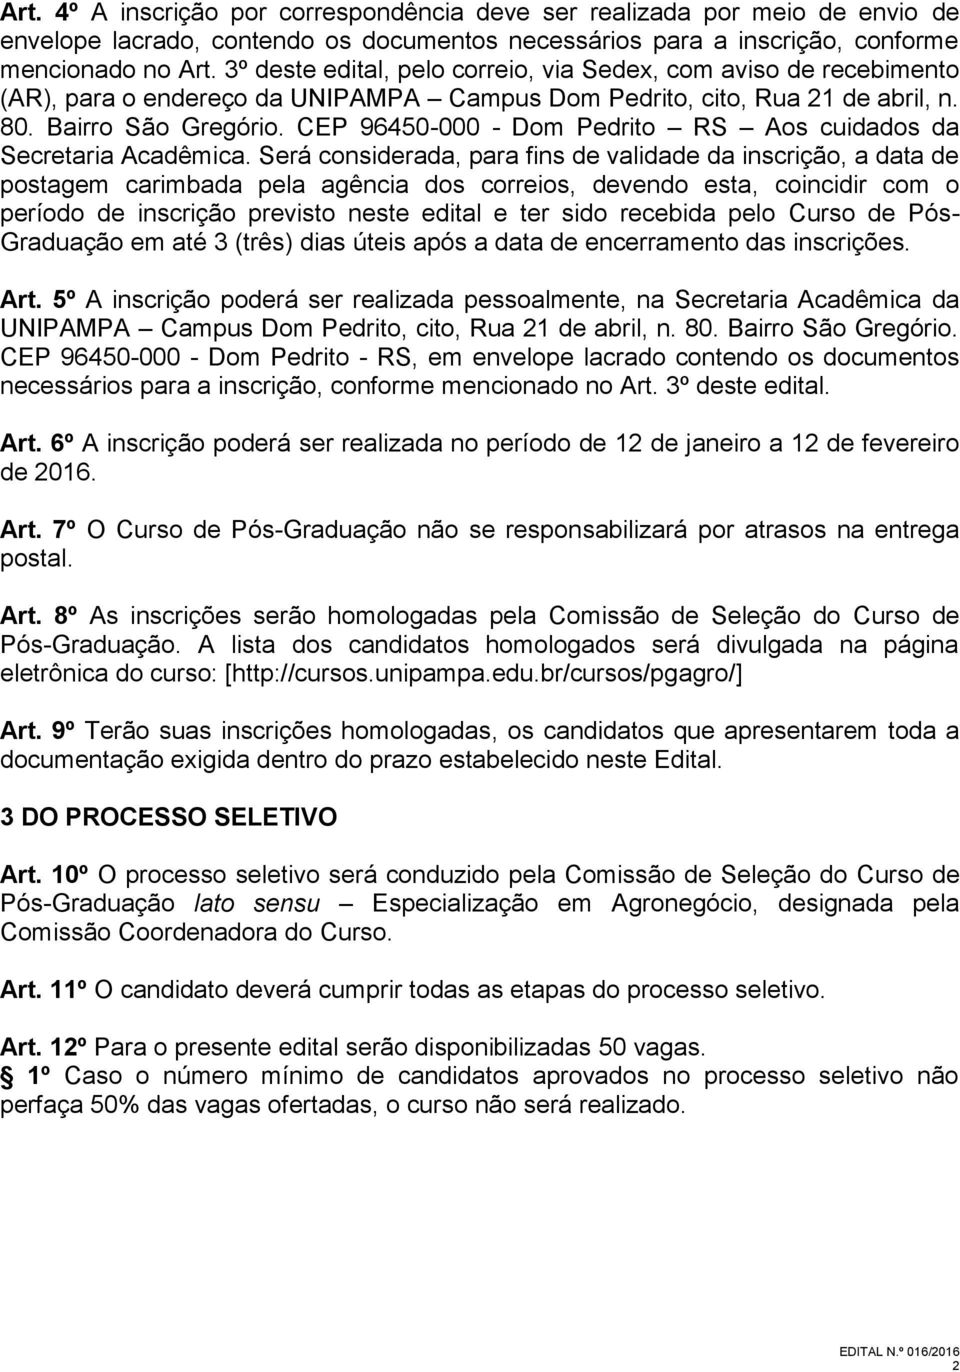 CEP 96450-000 - Dom Pedrito RS Aos cuidados da Secretaria Acadêmica.